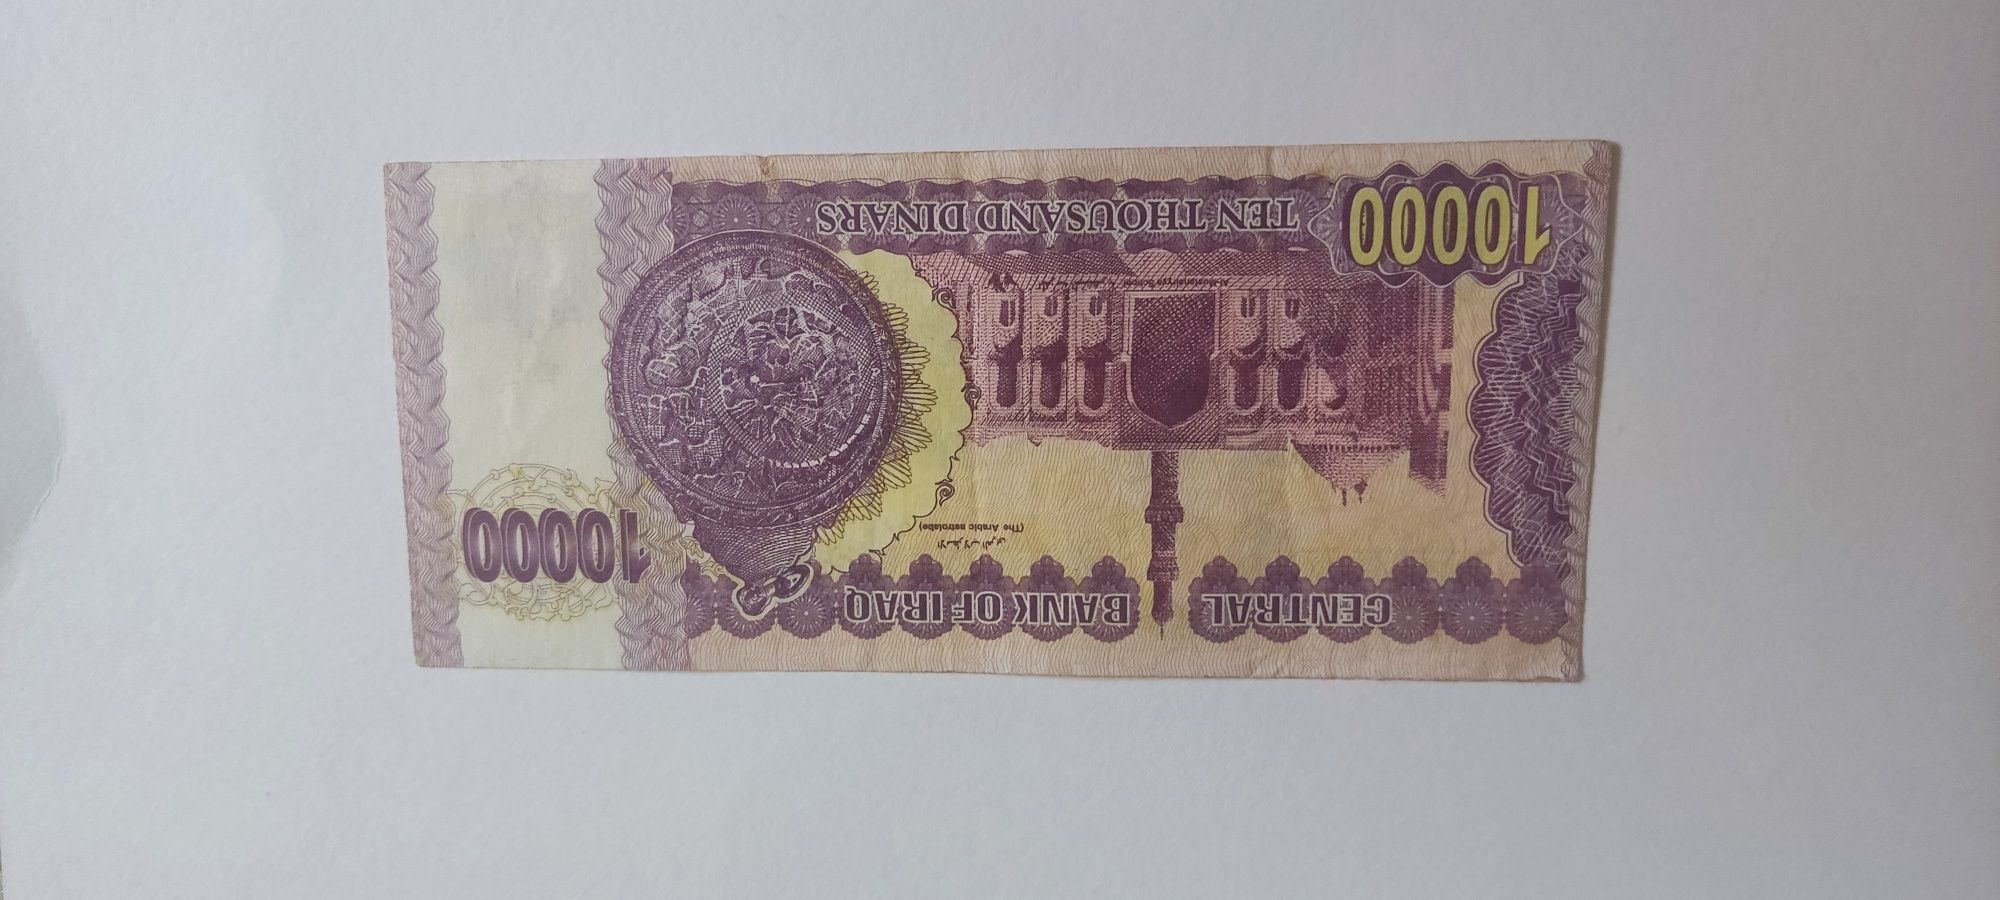 Bancnota 10.000 de dinari